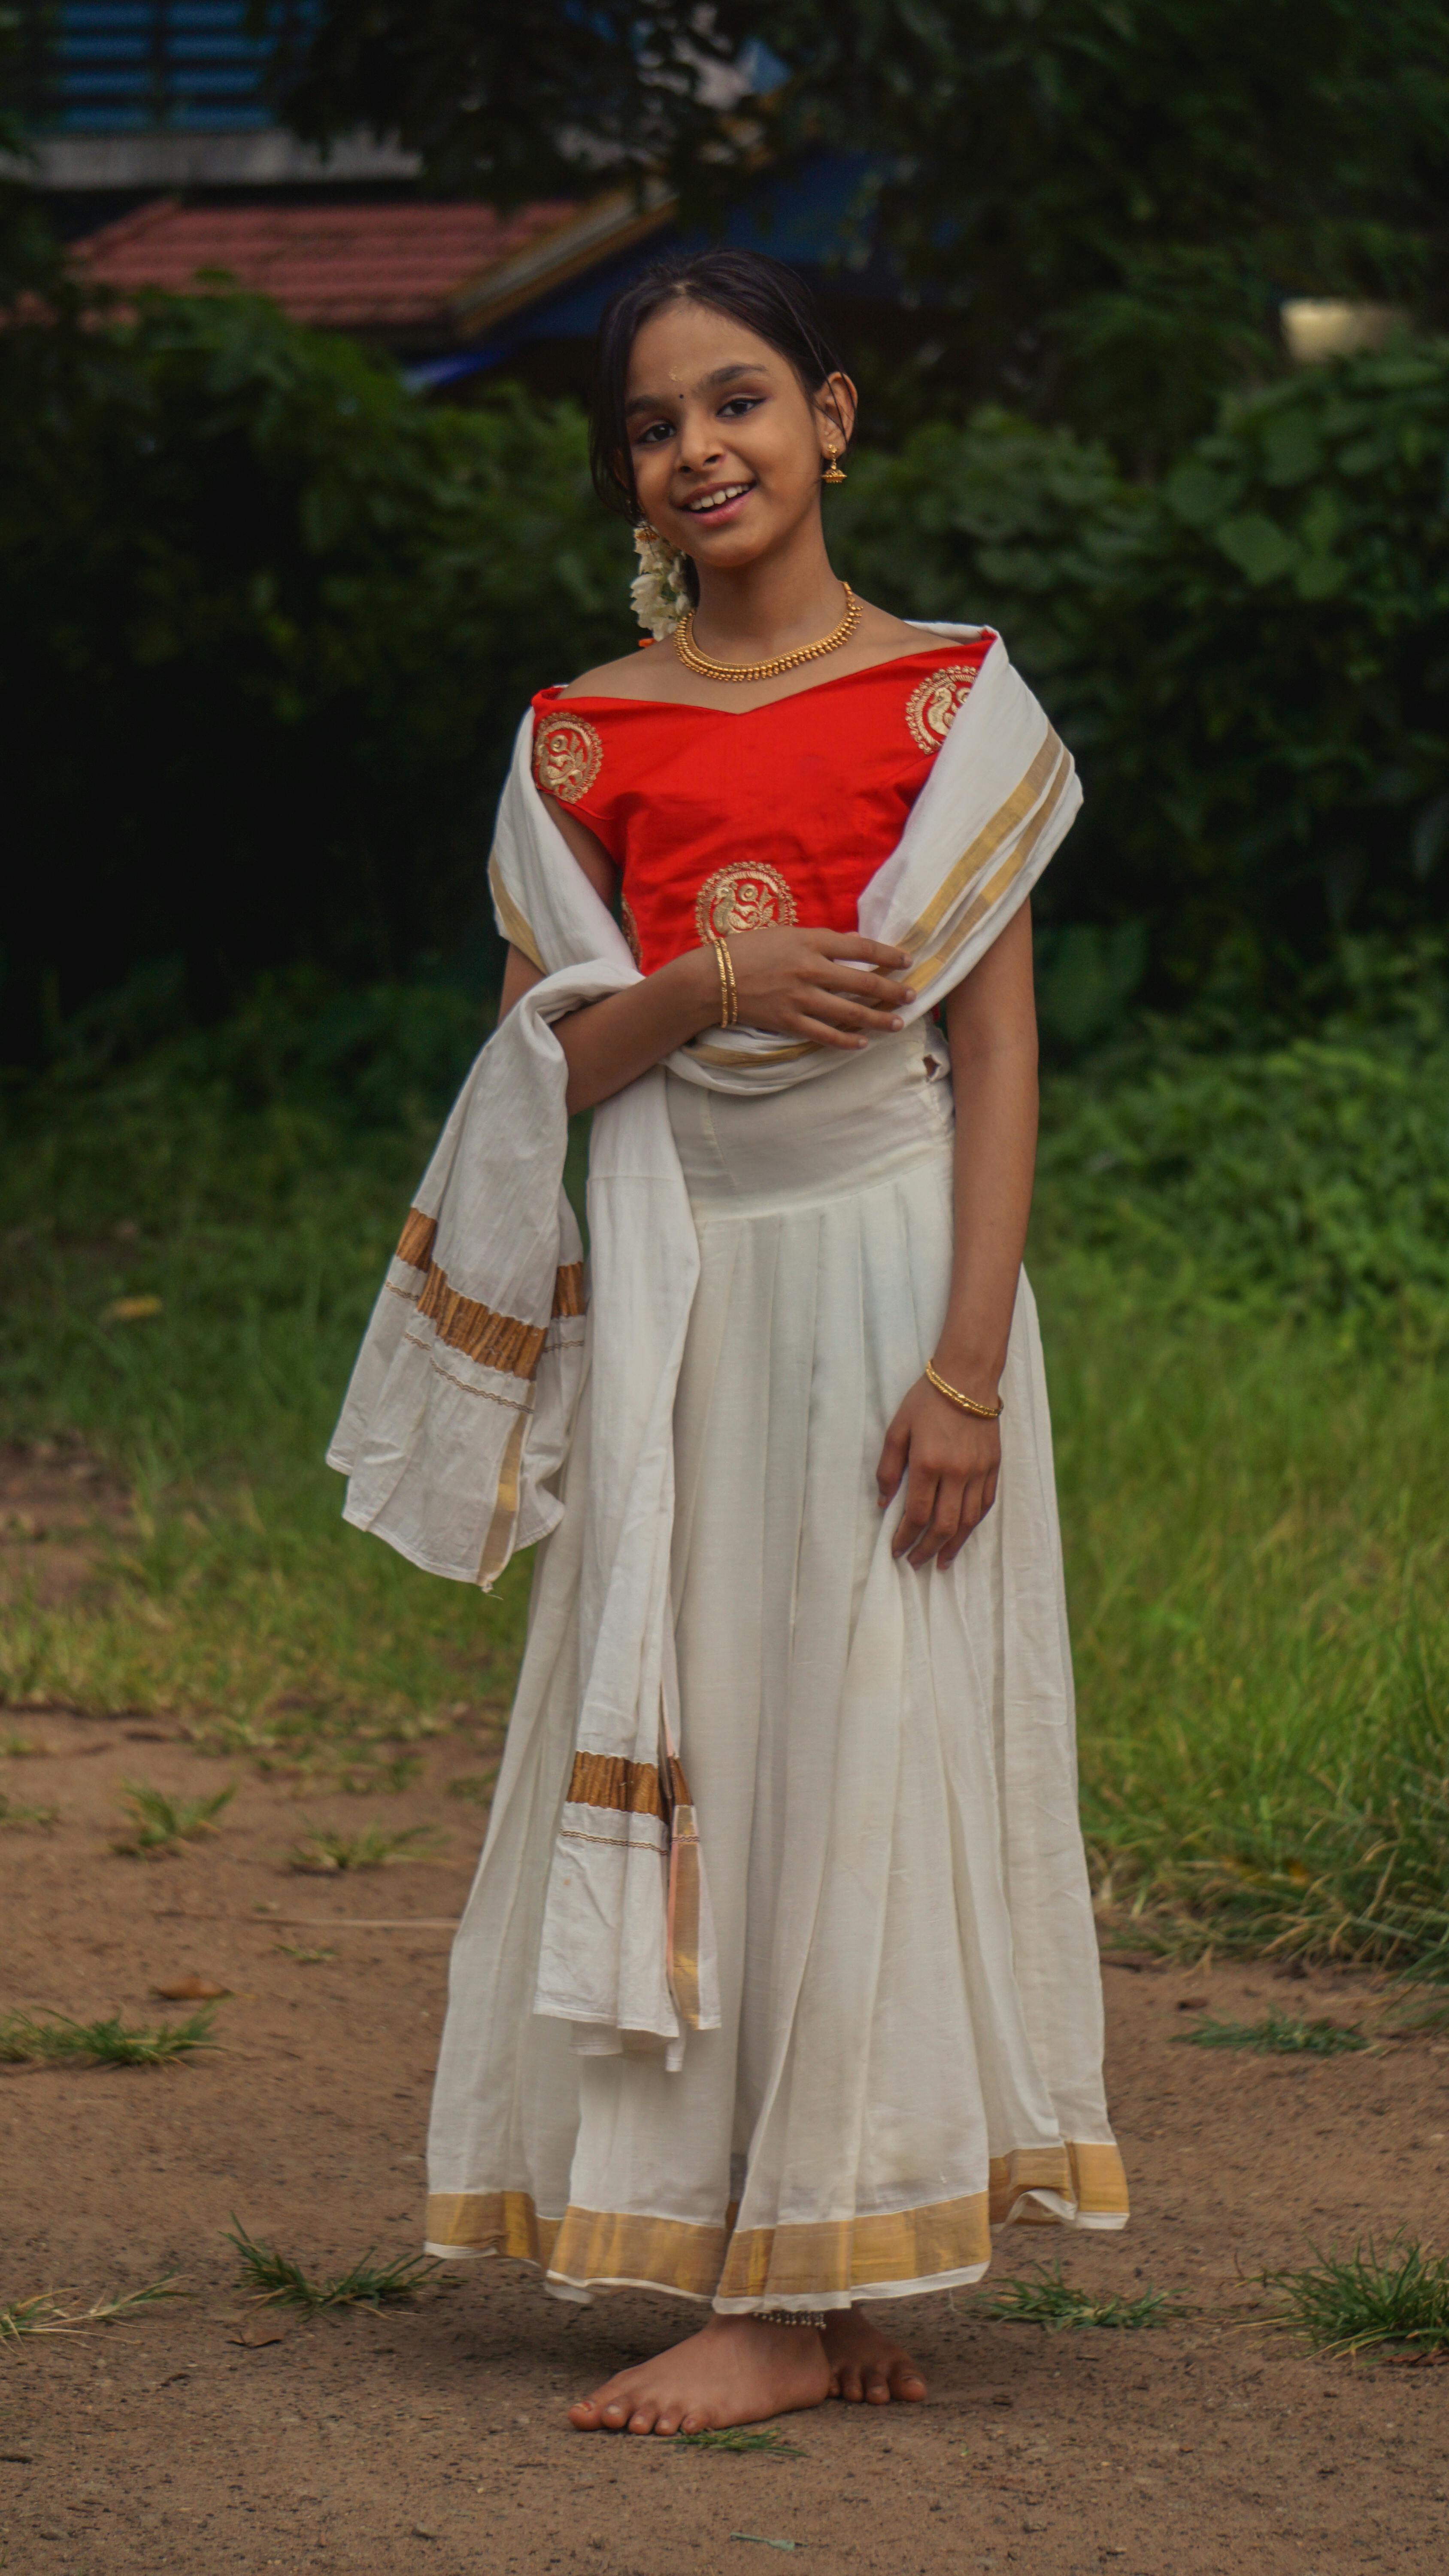 The Best Kerala Traditional Kidswear for Onam | Nakshatra Kids | Onam dress  for baby girl